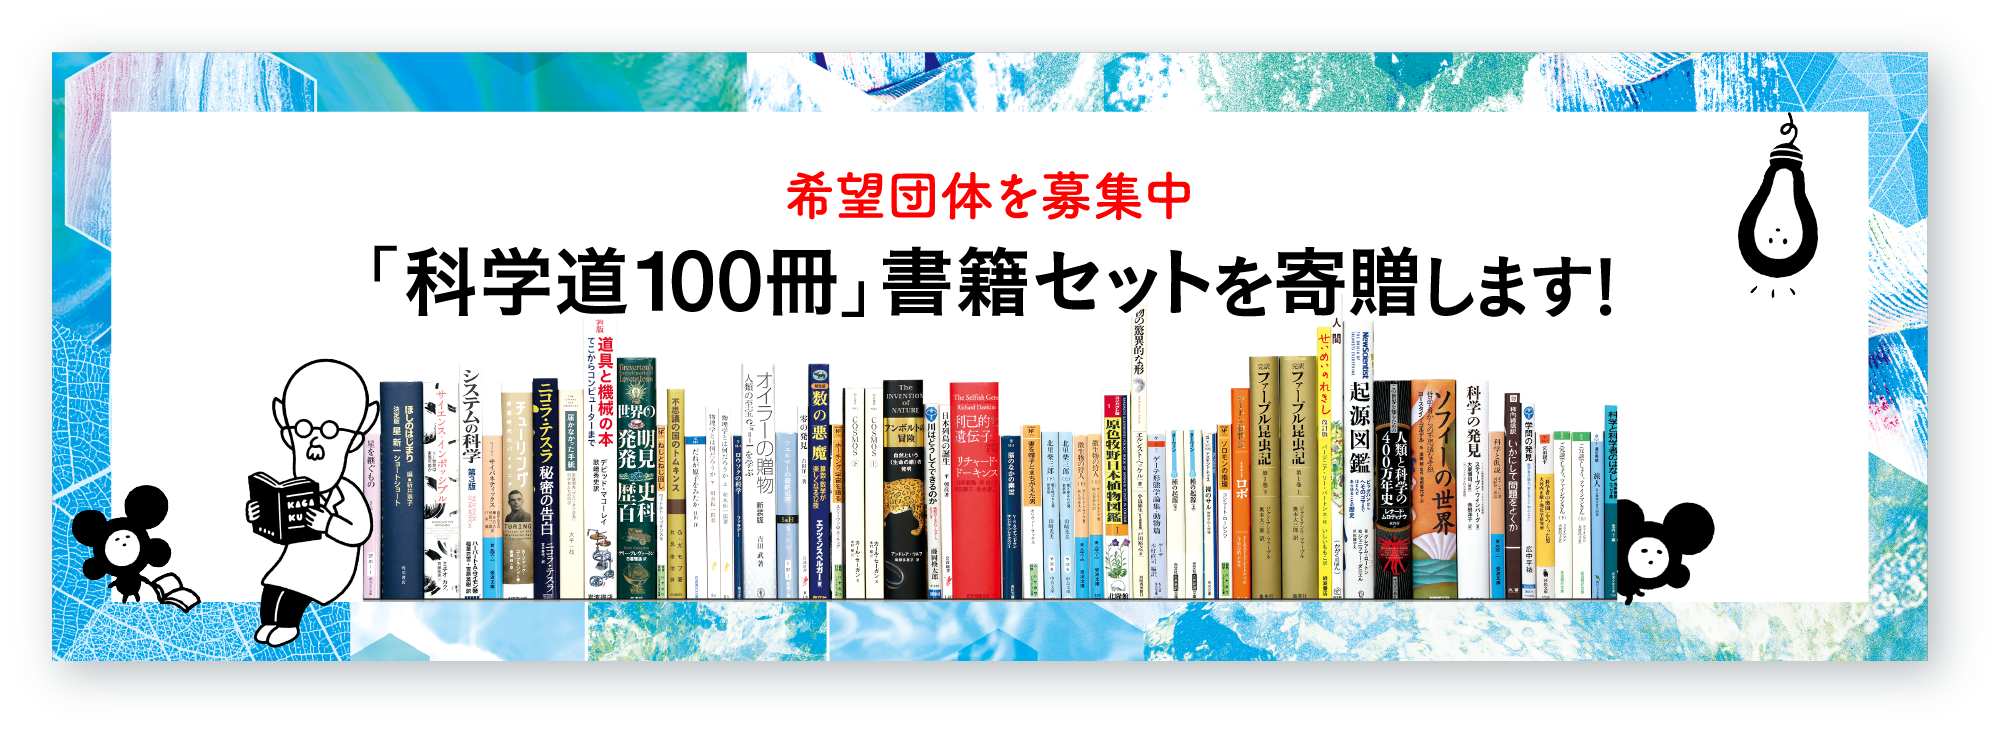 「科学道100冊」書籍セット寄贈記事のバナー画像